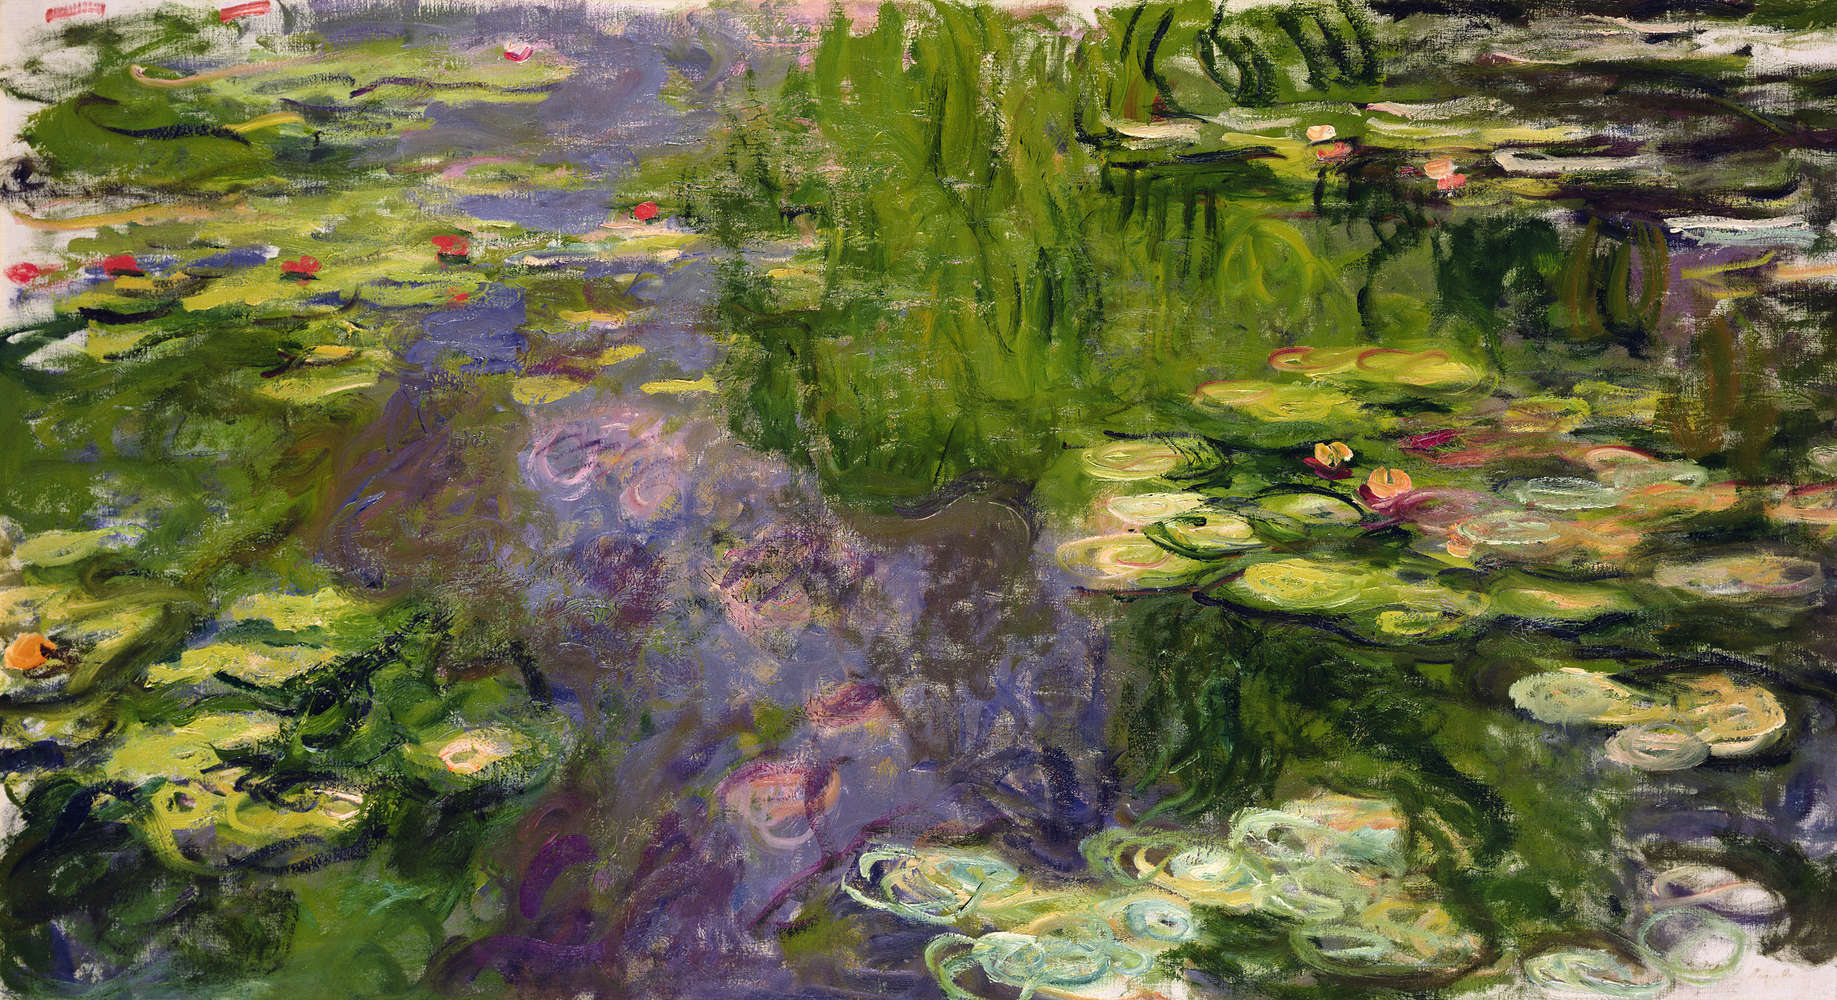             Fototapete "Seerosen" von Claude Monet
        